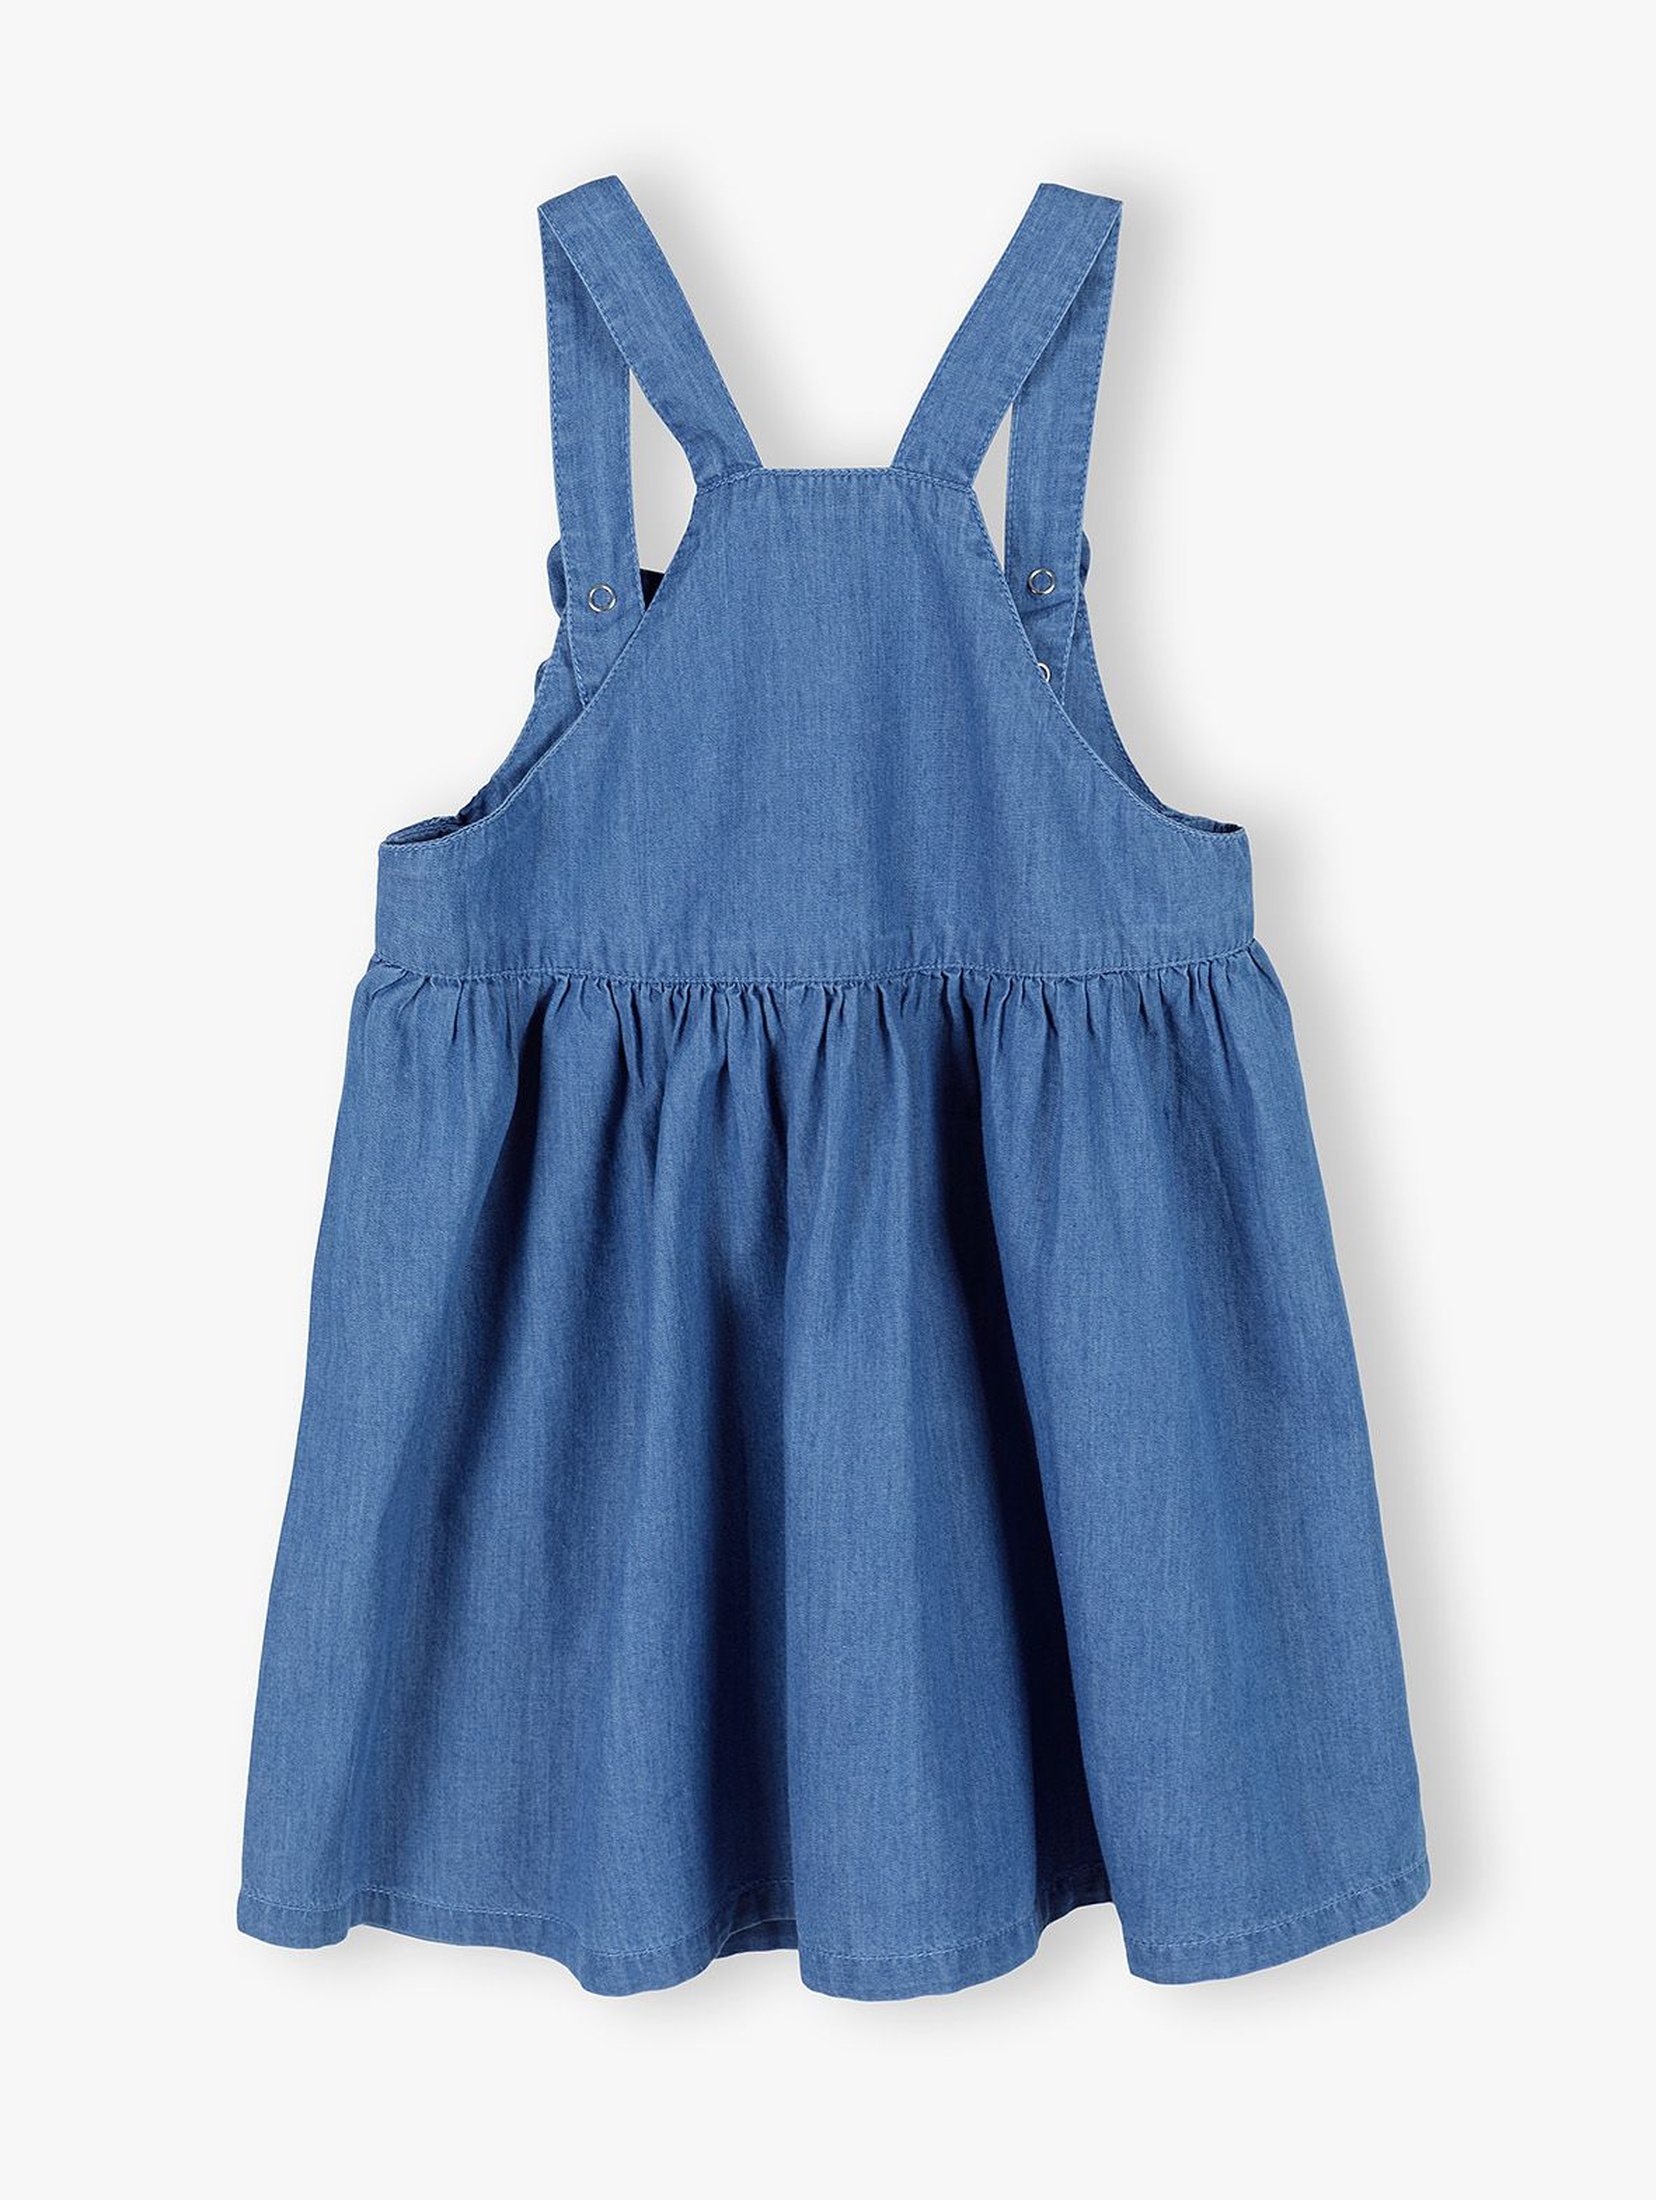 Jeansowa spódnica ogrodniczka z ozdobnymi kokardkami - niebieska